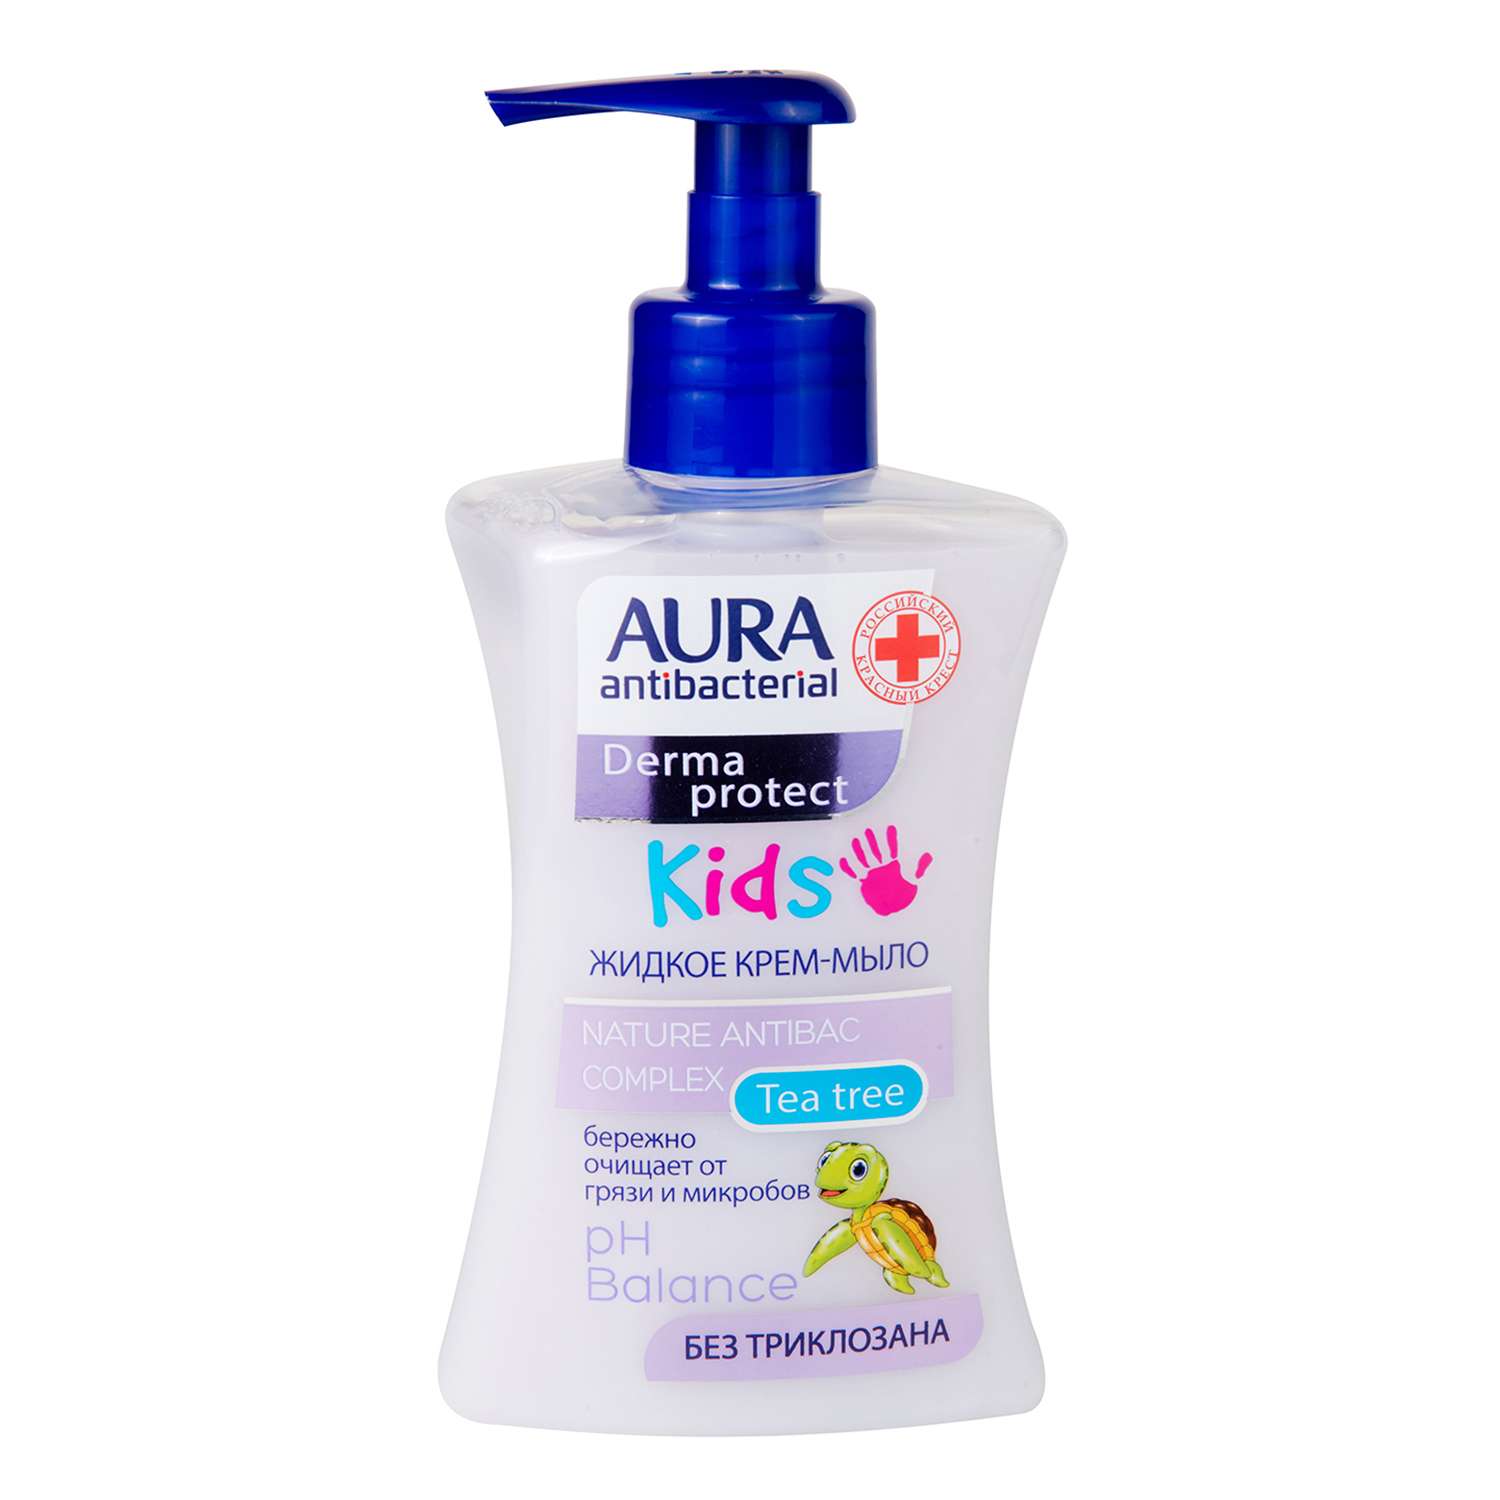 Крем-мыло AURA Antibacterial Kids Derma protect в ассортименте 250мл - фото 2